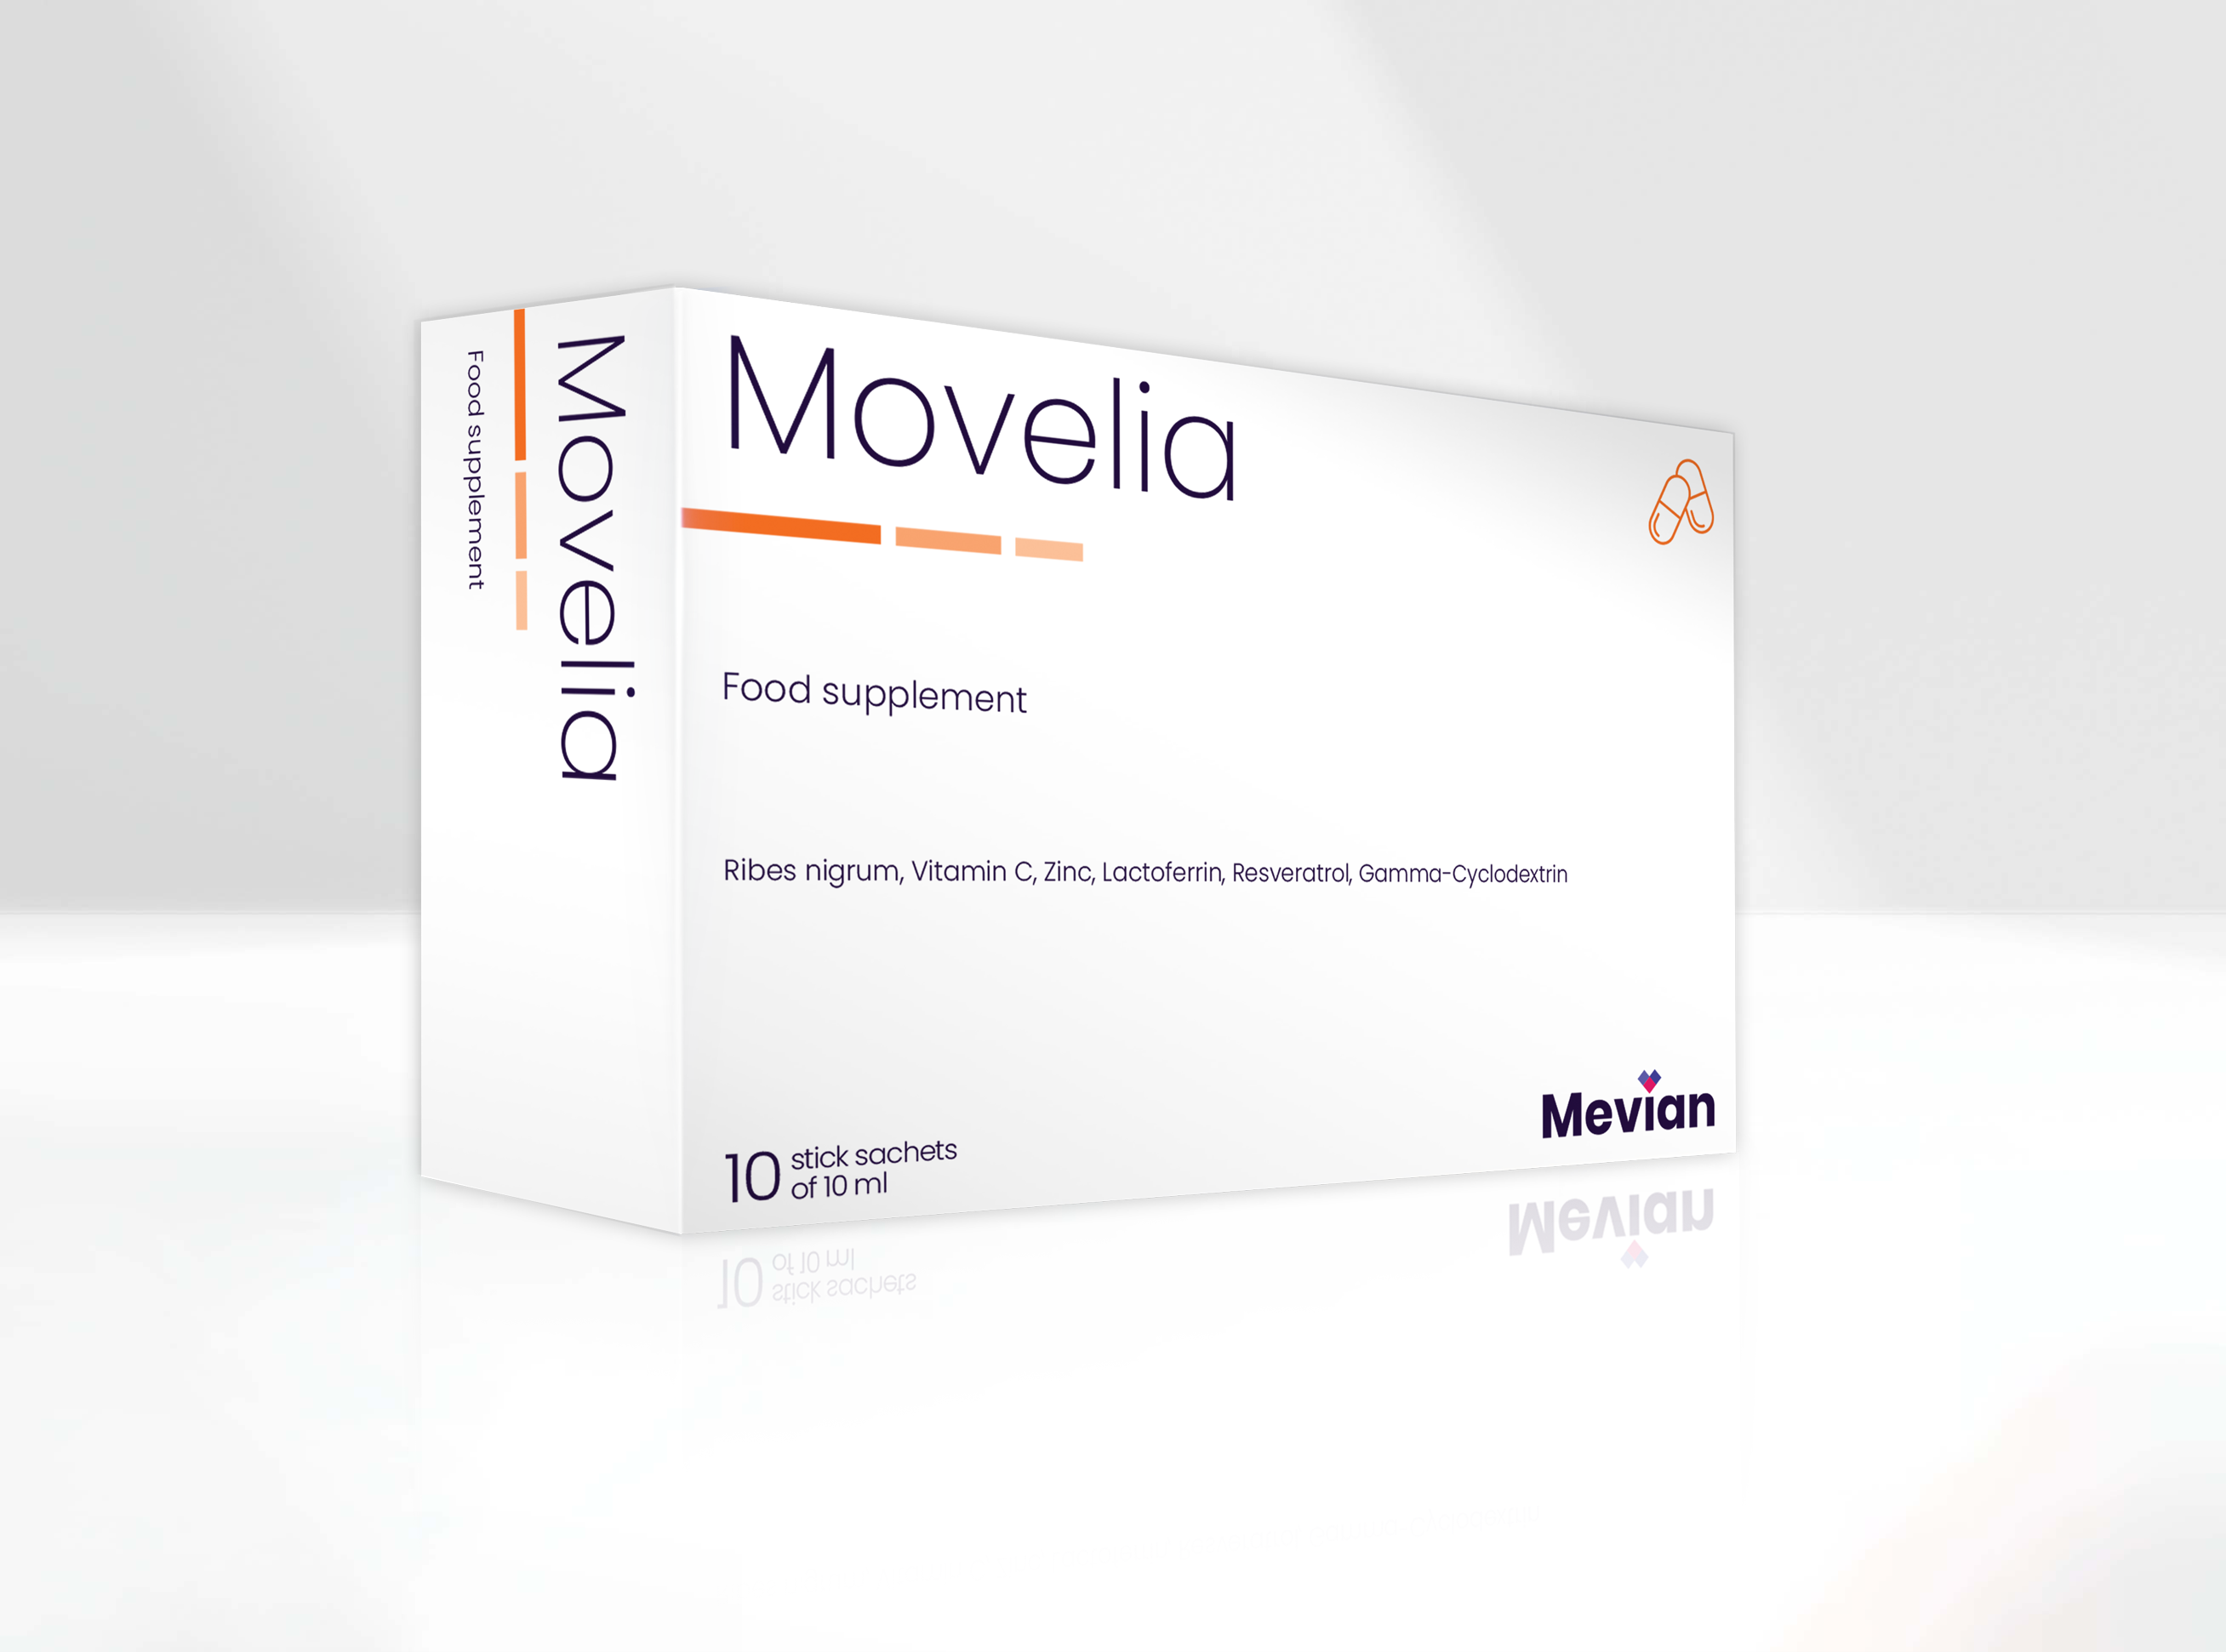 Movelia